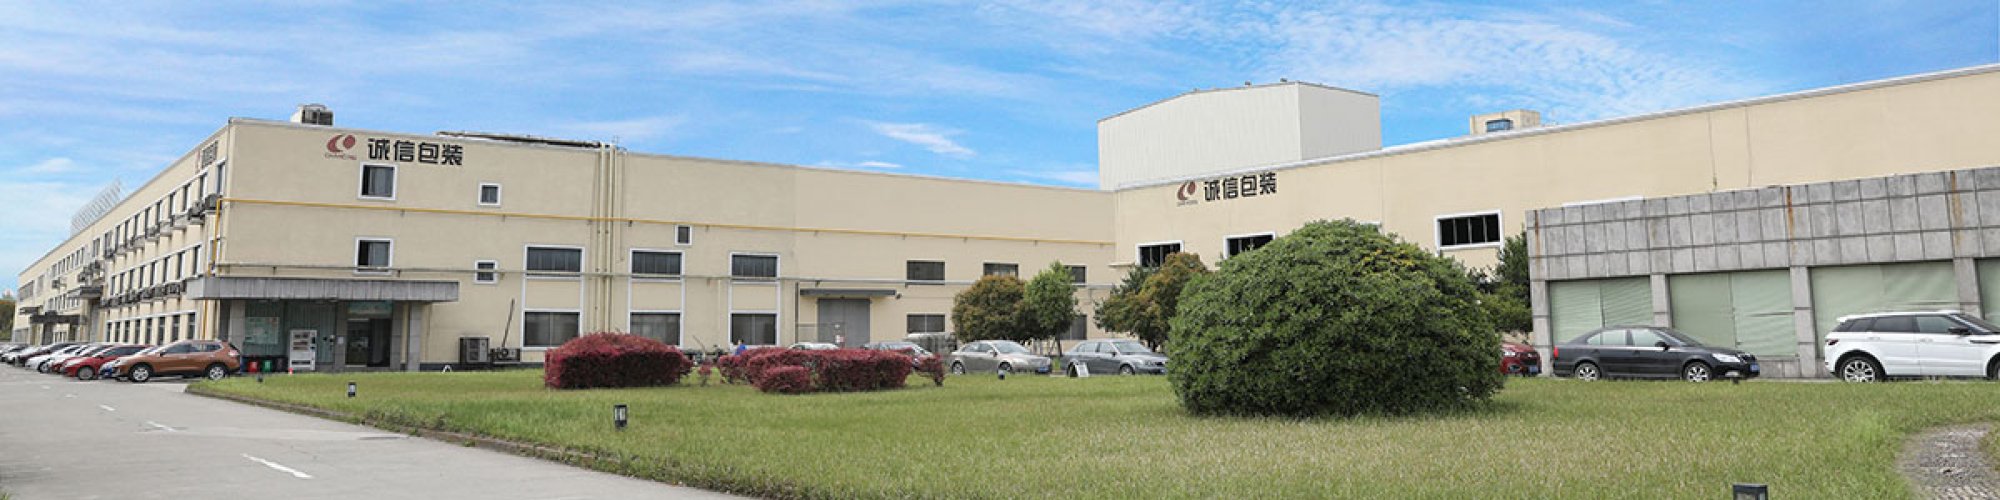 Zhejiang Chengxin Packaging Co., Ltd.